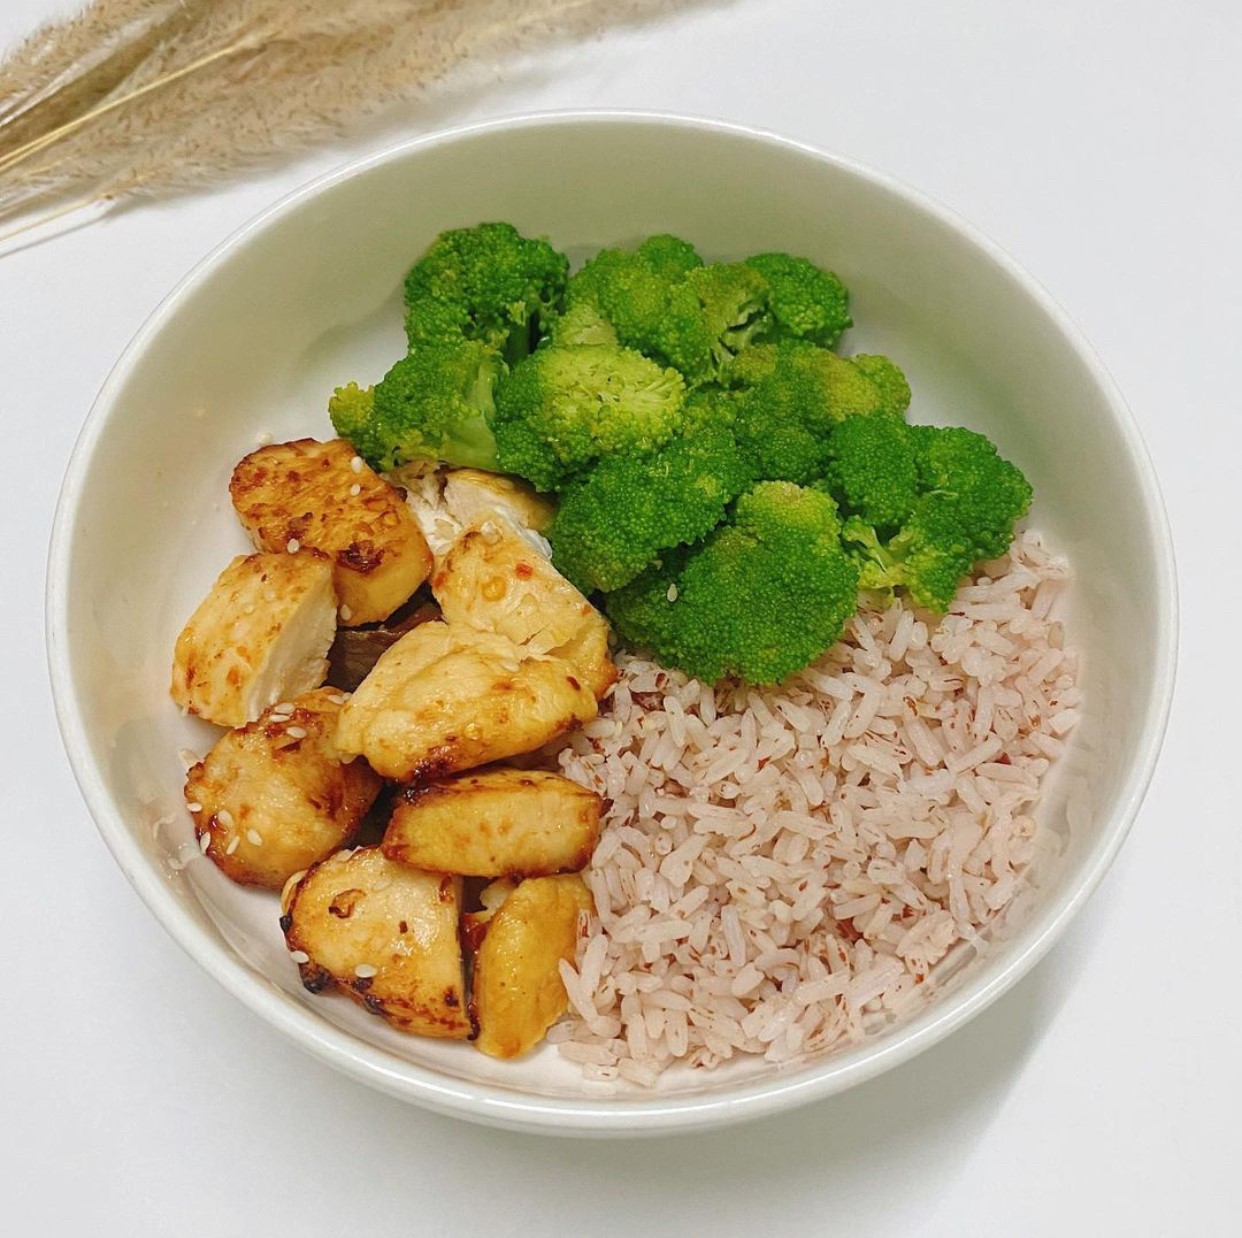 Healthy meal - Cơm gạo lứt cùng ức gà